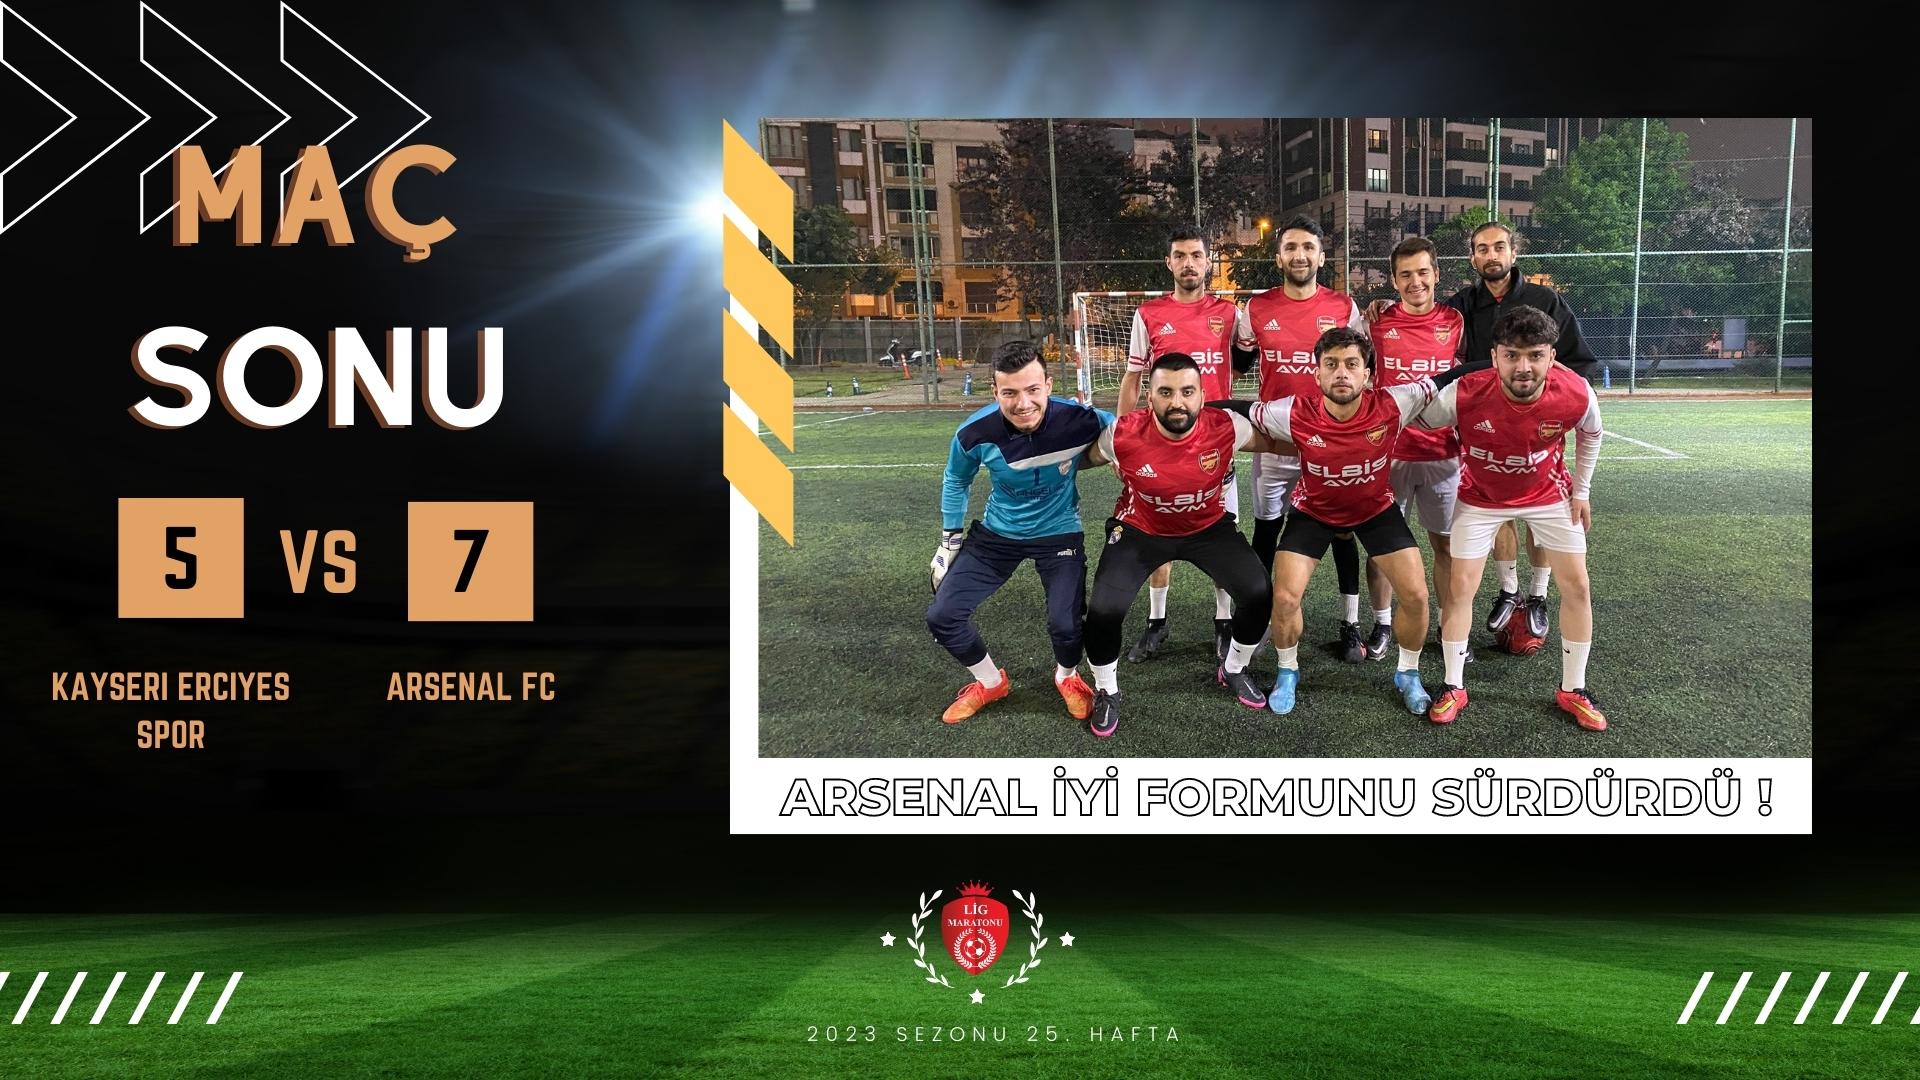 ARSENAL FC ALEV ALEV !